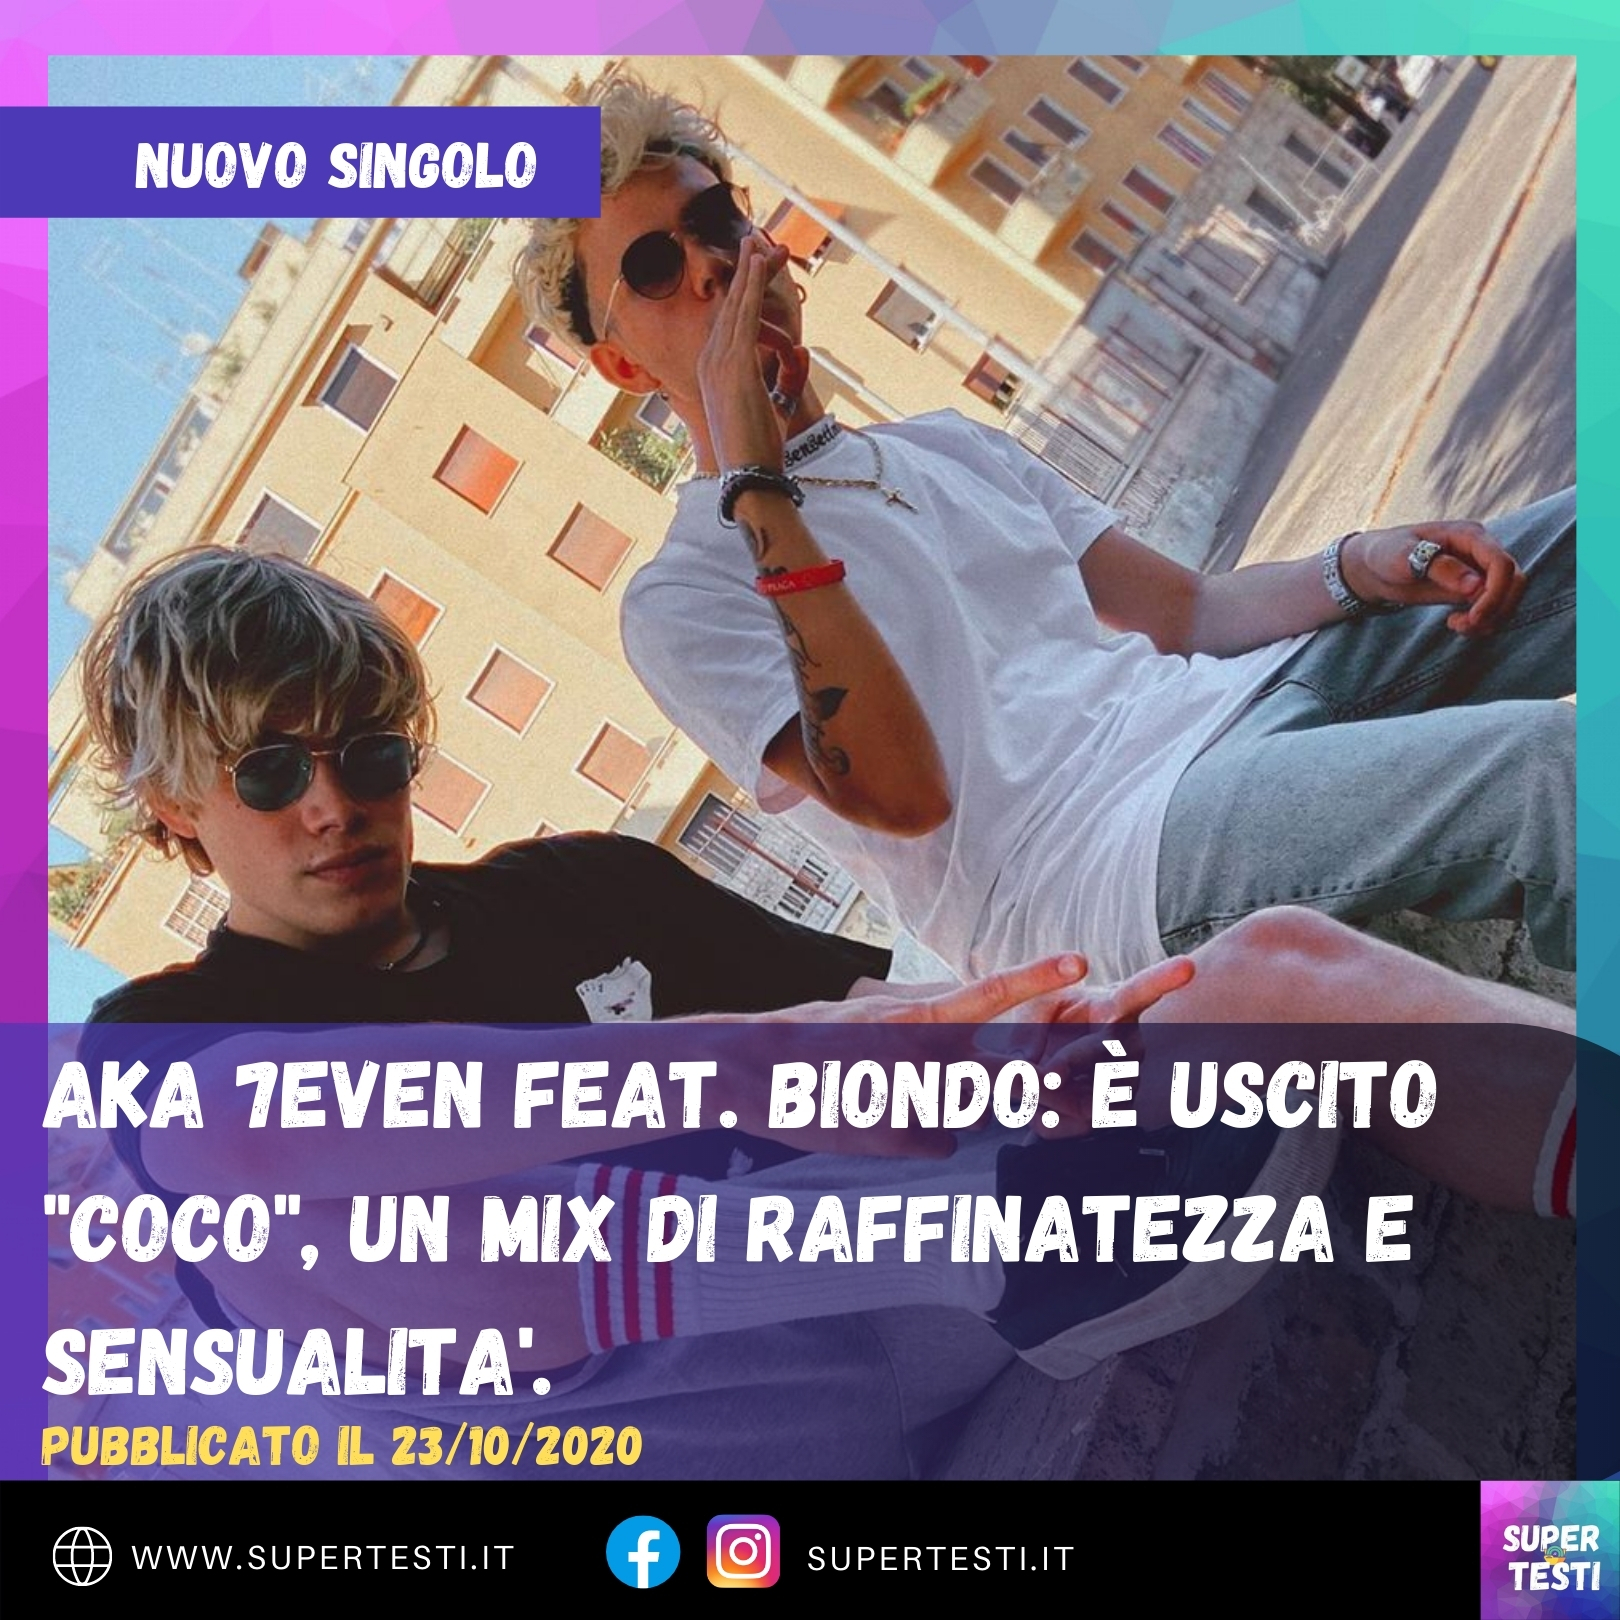 Aka 7even feat. Biondo: è uscito "coco", un mix di raffinatezza e sensualita'